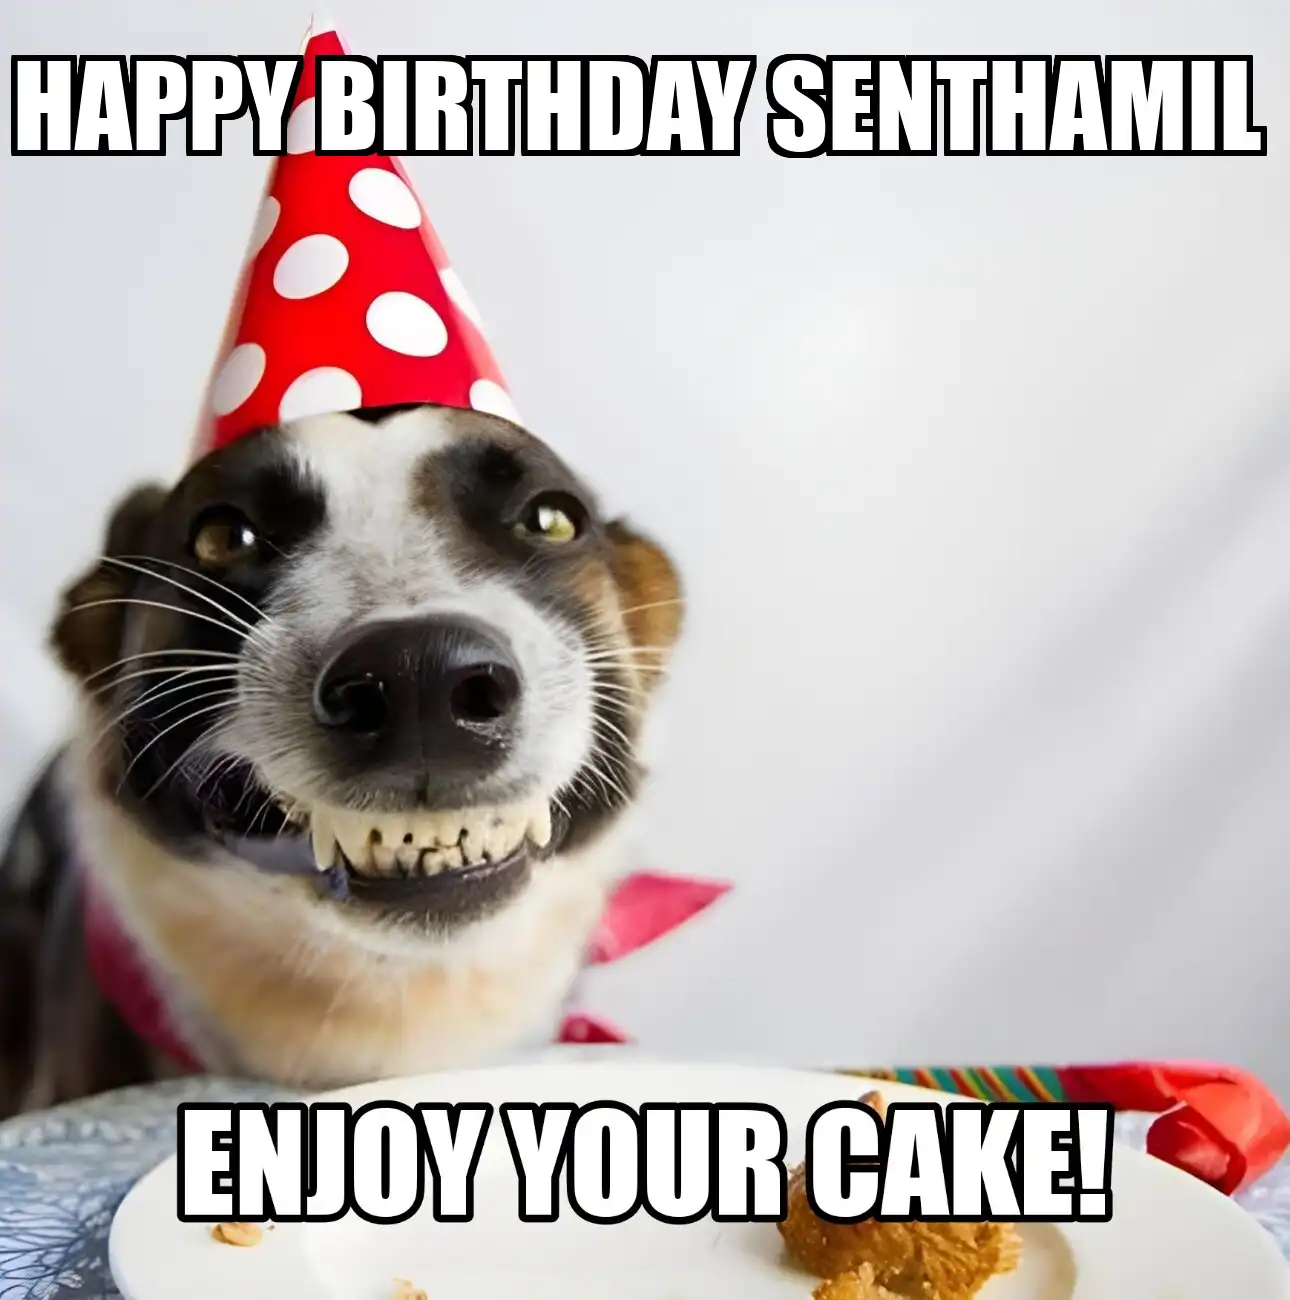 Happy Birthday Senthamil Enjoy Your Cake Dog Meme